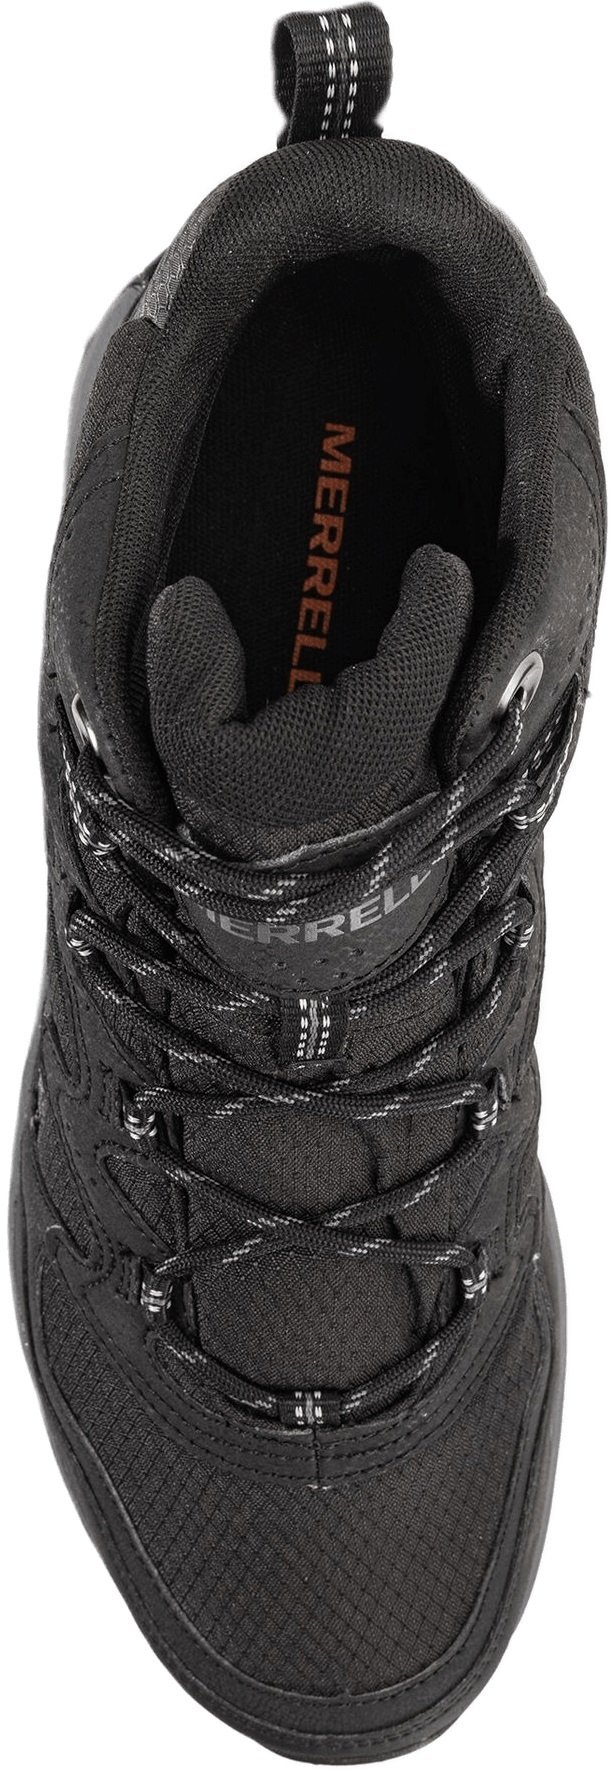 Ботинки мужские Merrell West Rim Sport MID GTX black 44 черный фото 6